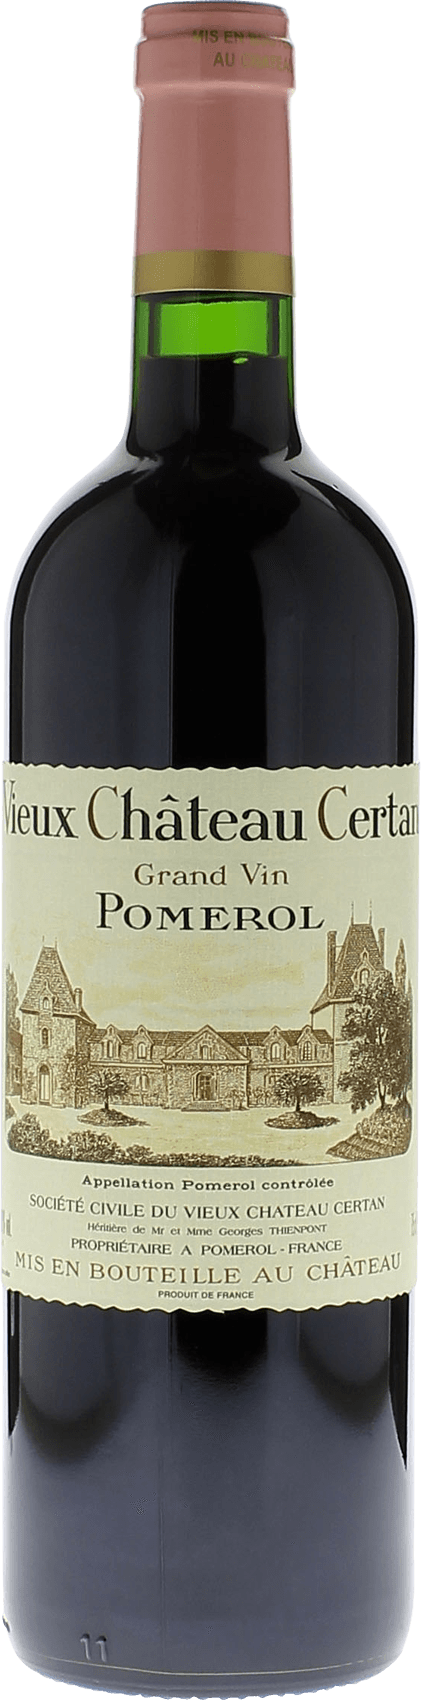 Vieux chteau  certan 1993  Pomerol, Bordeaux rouge